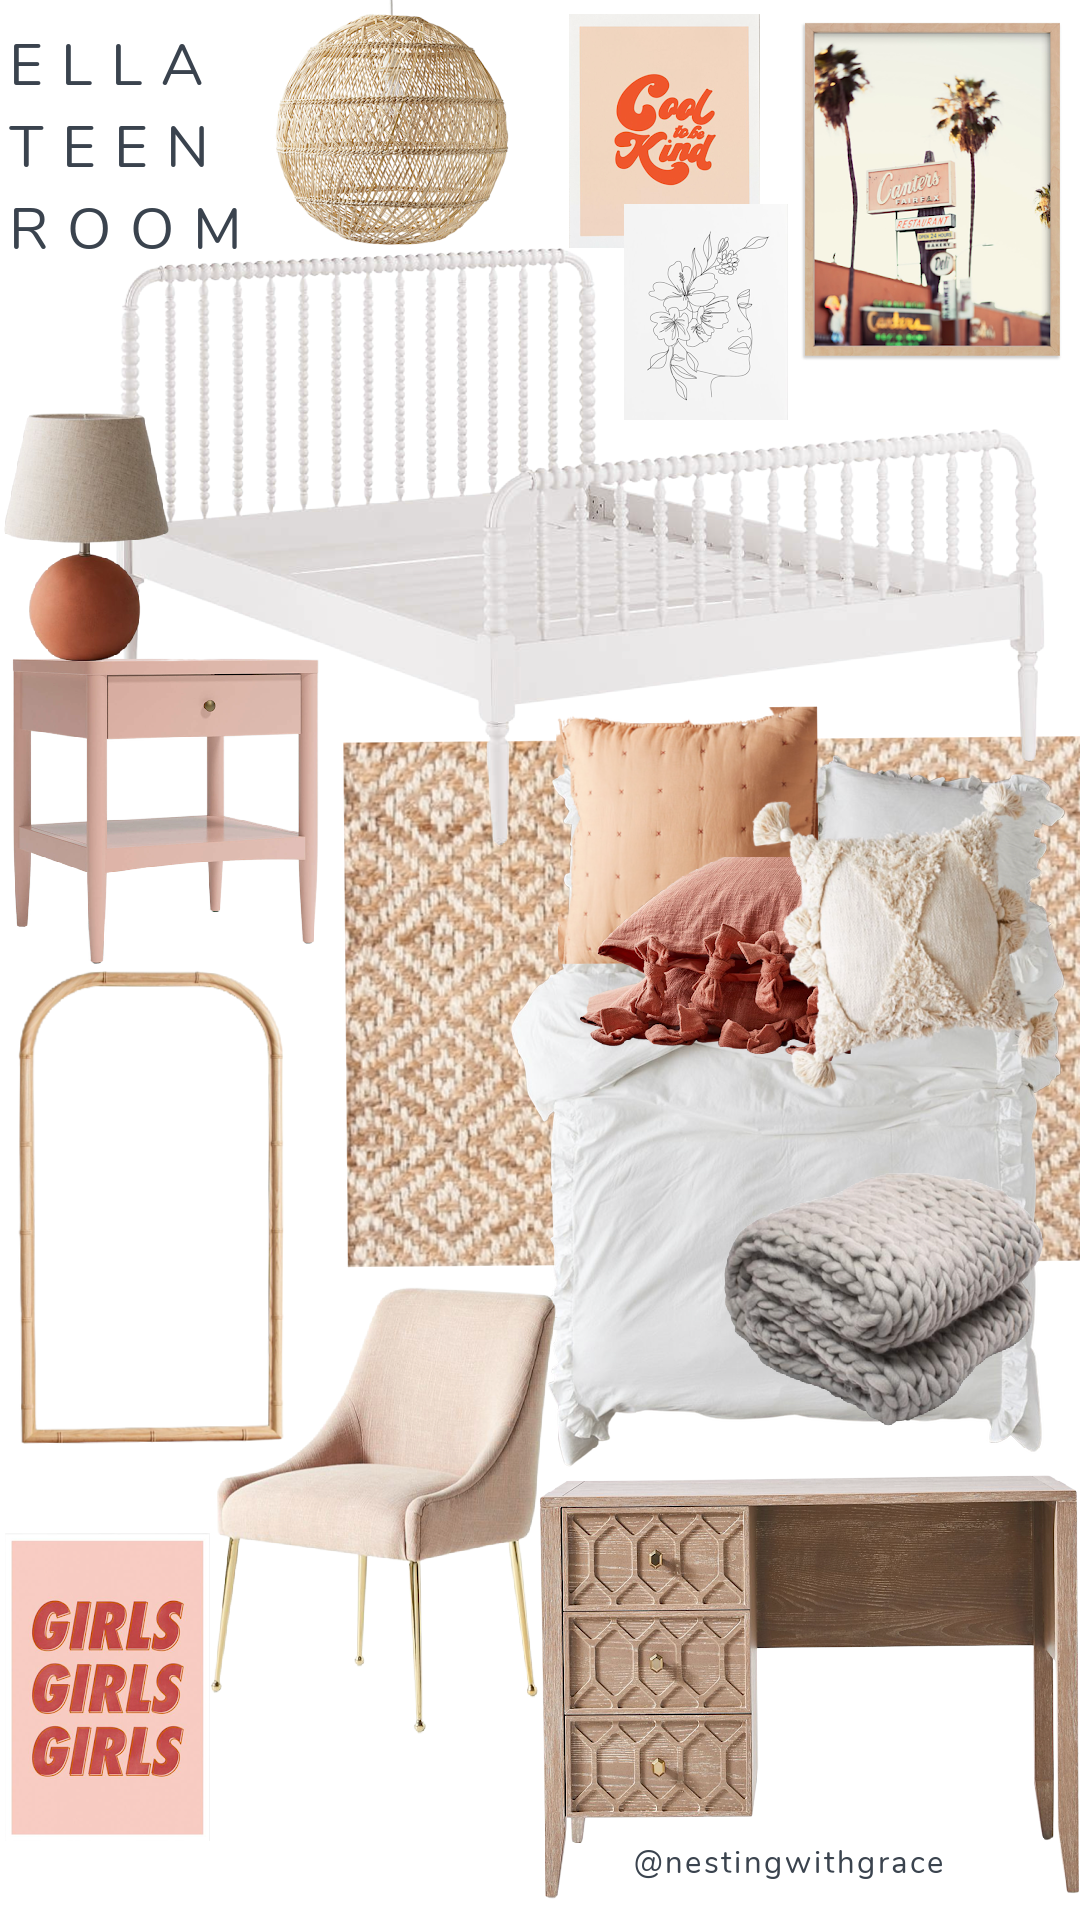 Our Kids Bedrooms Design Boards Teen Girls Room Ideas Toddler Boys Room Girls Bedroom Ideas